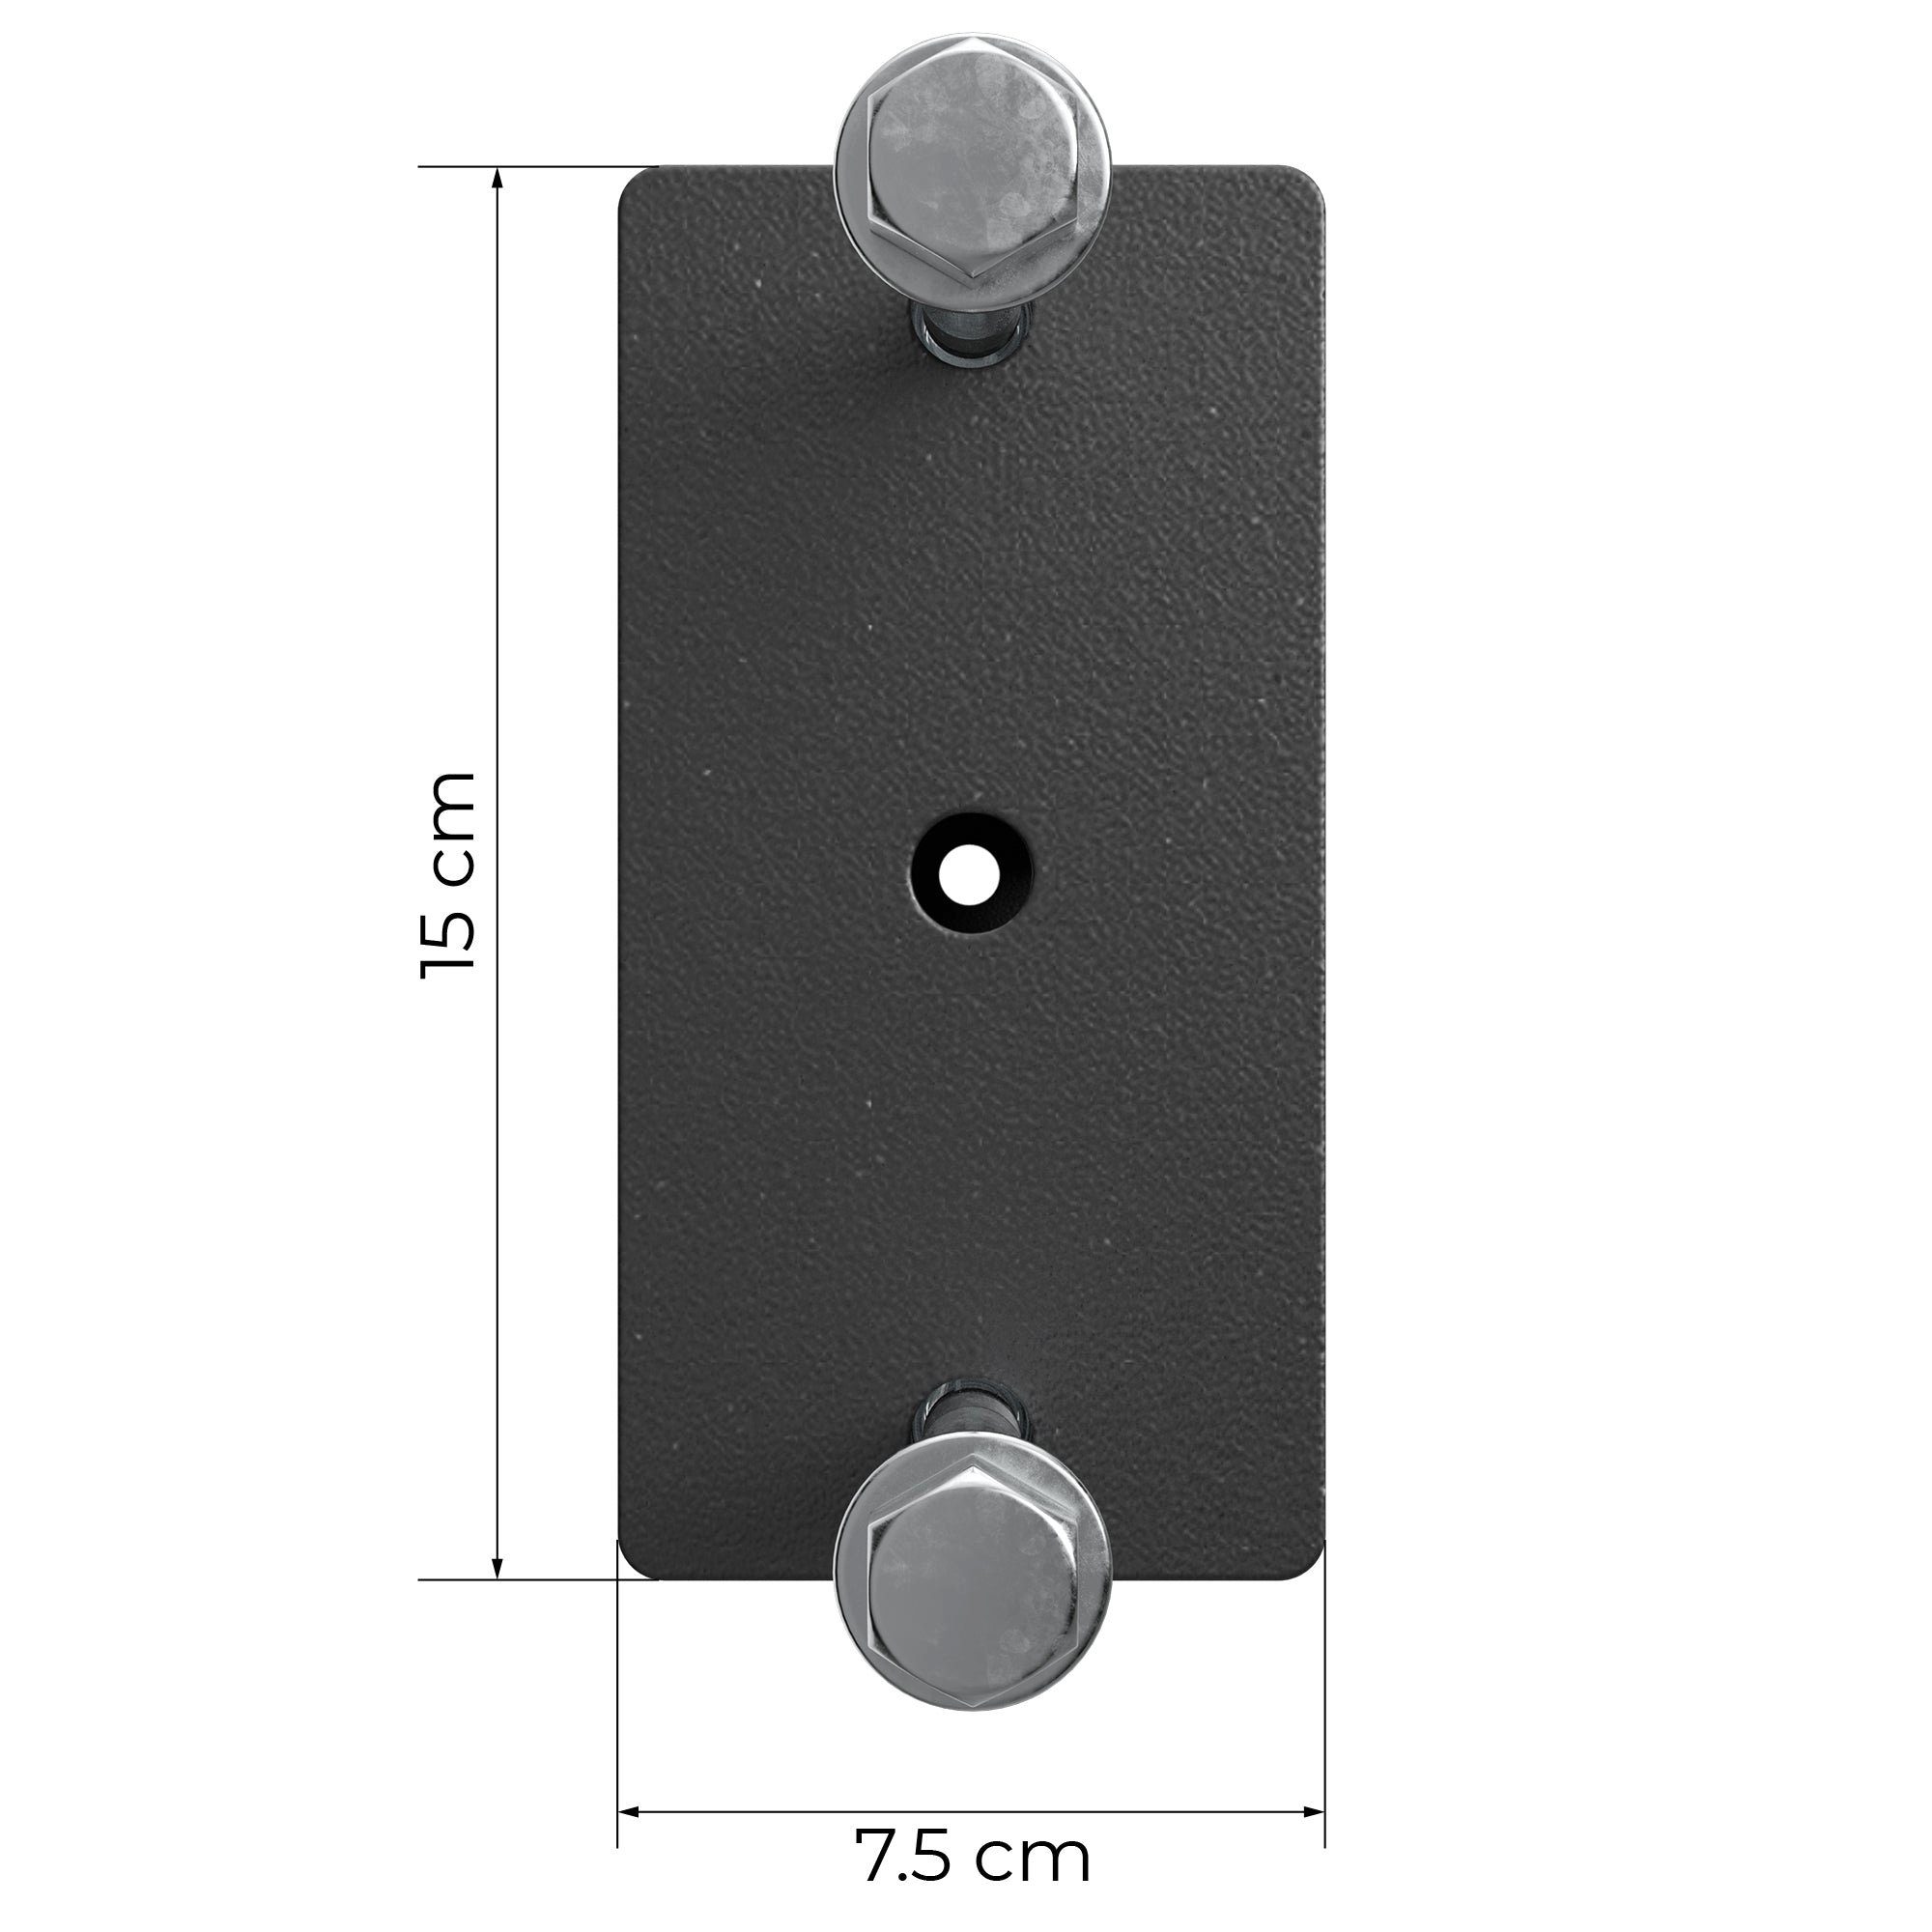 ATLETICA Power In cm black rostfreien verfügbar Crossbar, Rack Paarweise, 42 2 Farben R8